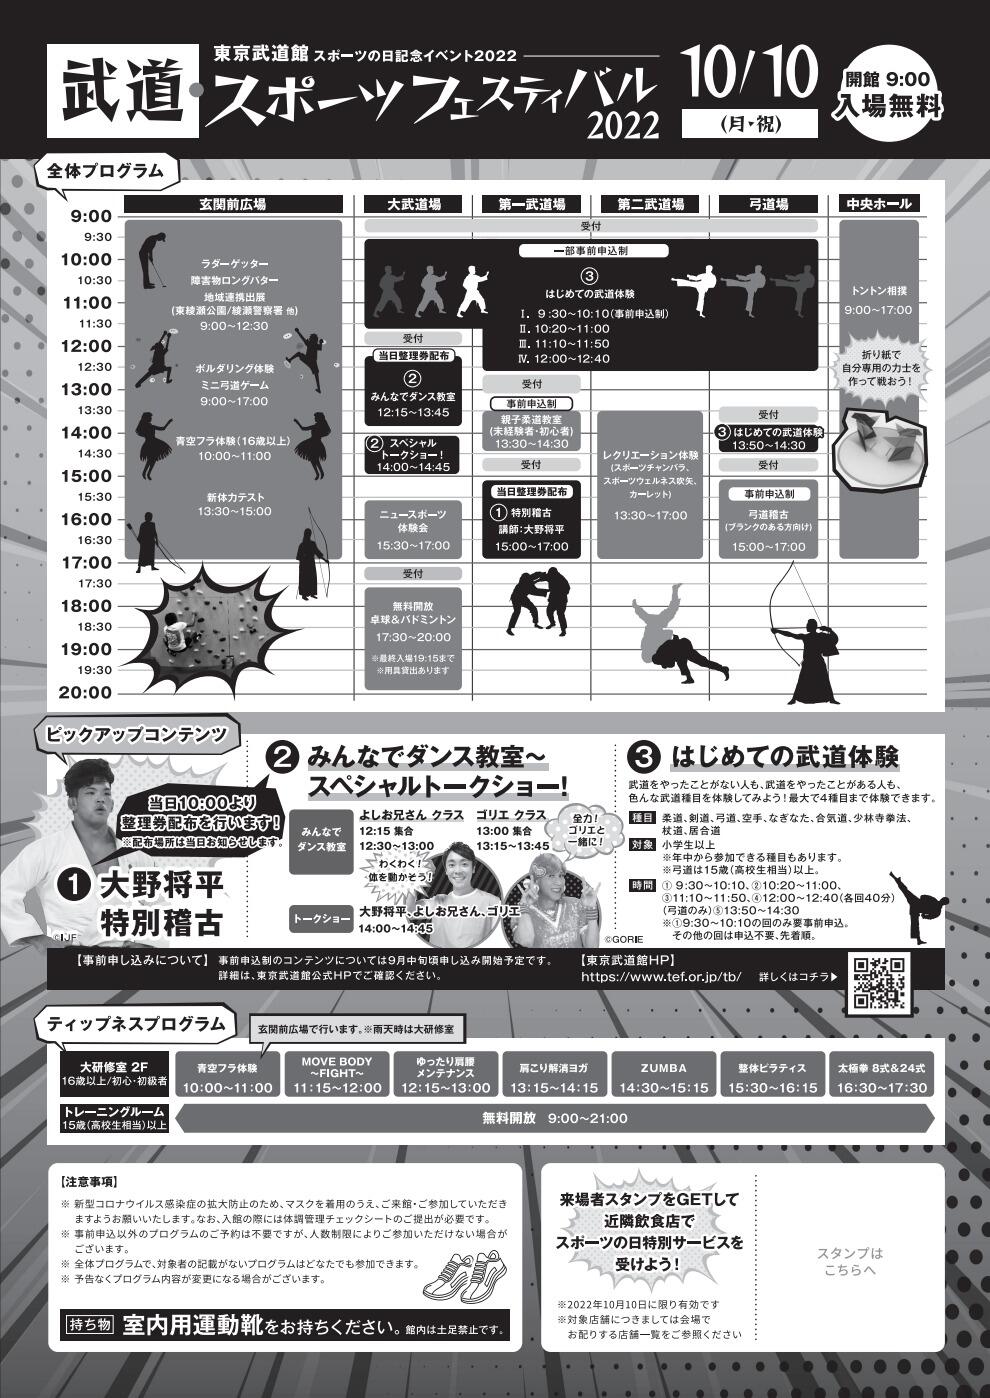 武道・スポーツフェスティバル2022「はじめての武道体験」【柔道】